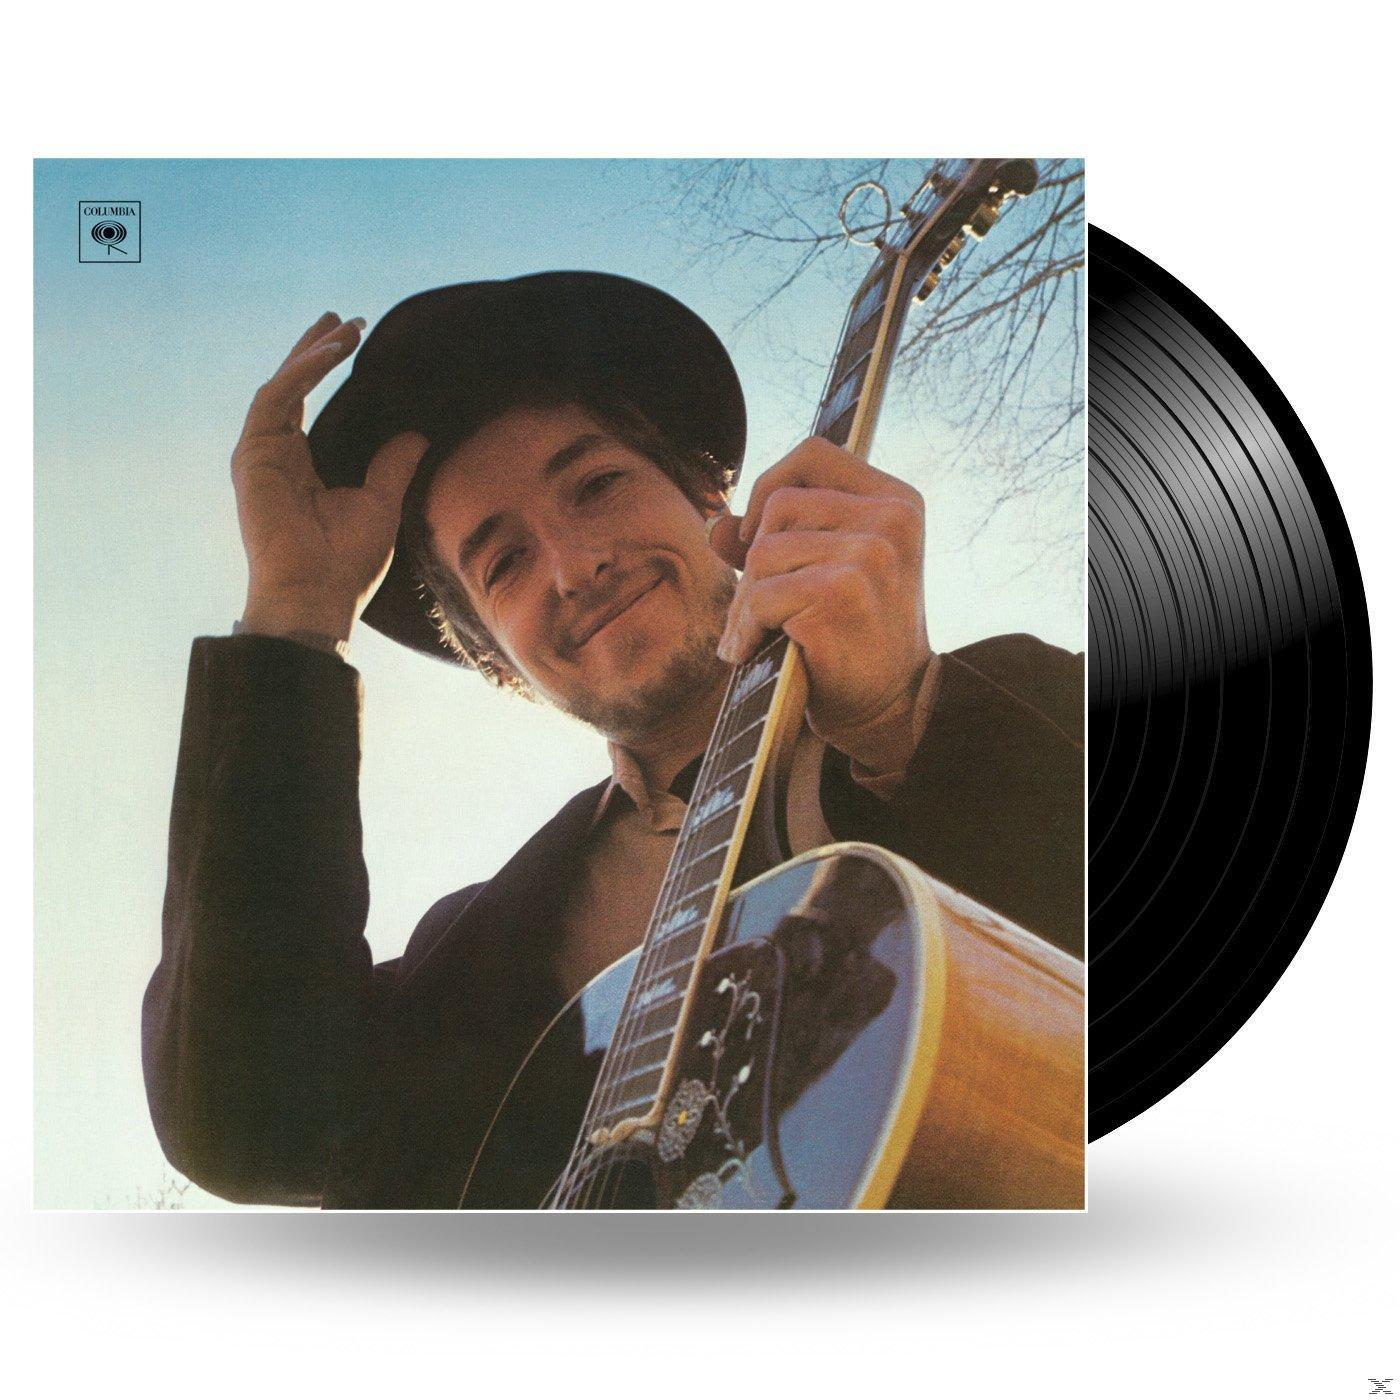 Bob Dylan - - (Vinyl) Skyline Nashville